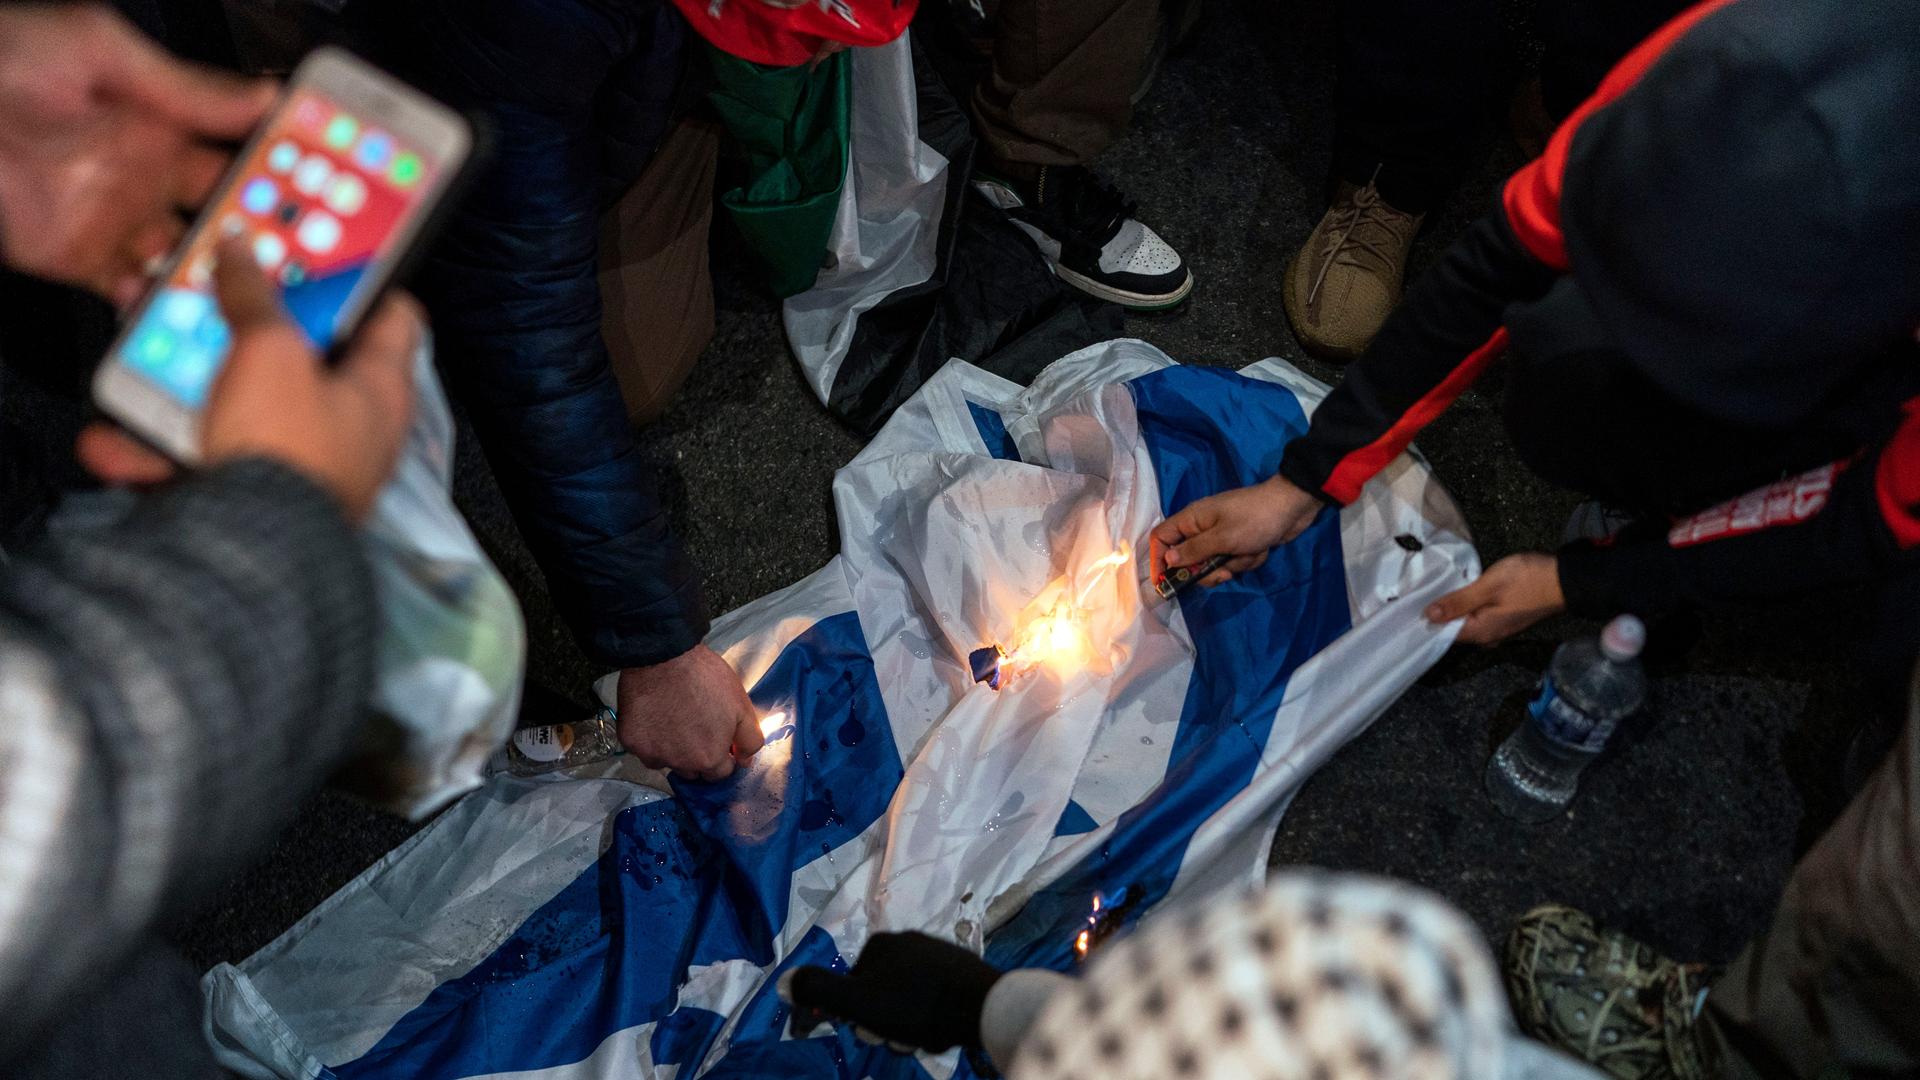 Detailaufnahme von Demonstranten, die während eines Protests eine Israelflagge anzünden.